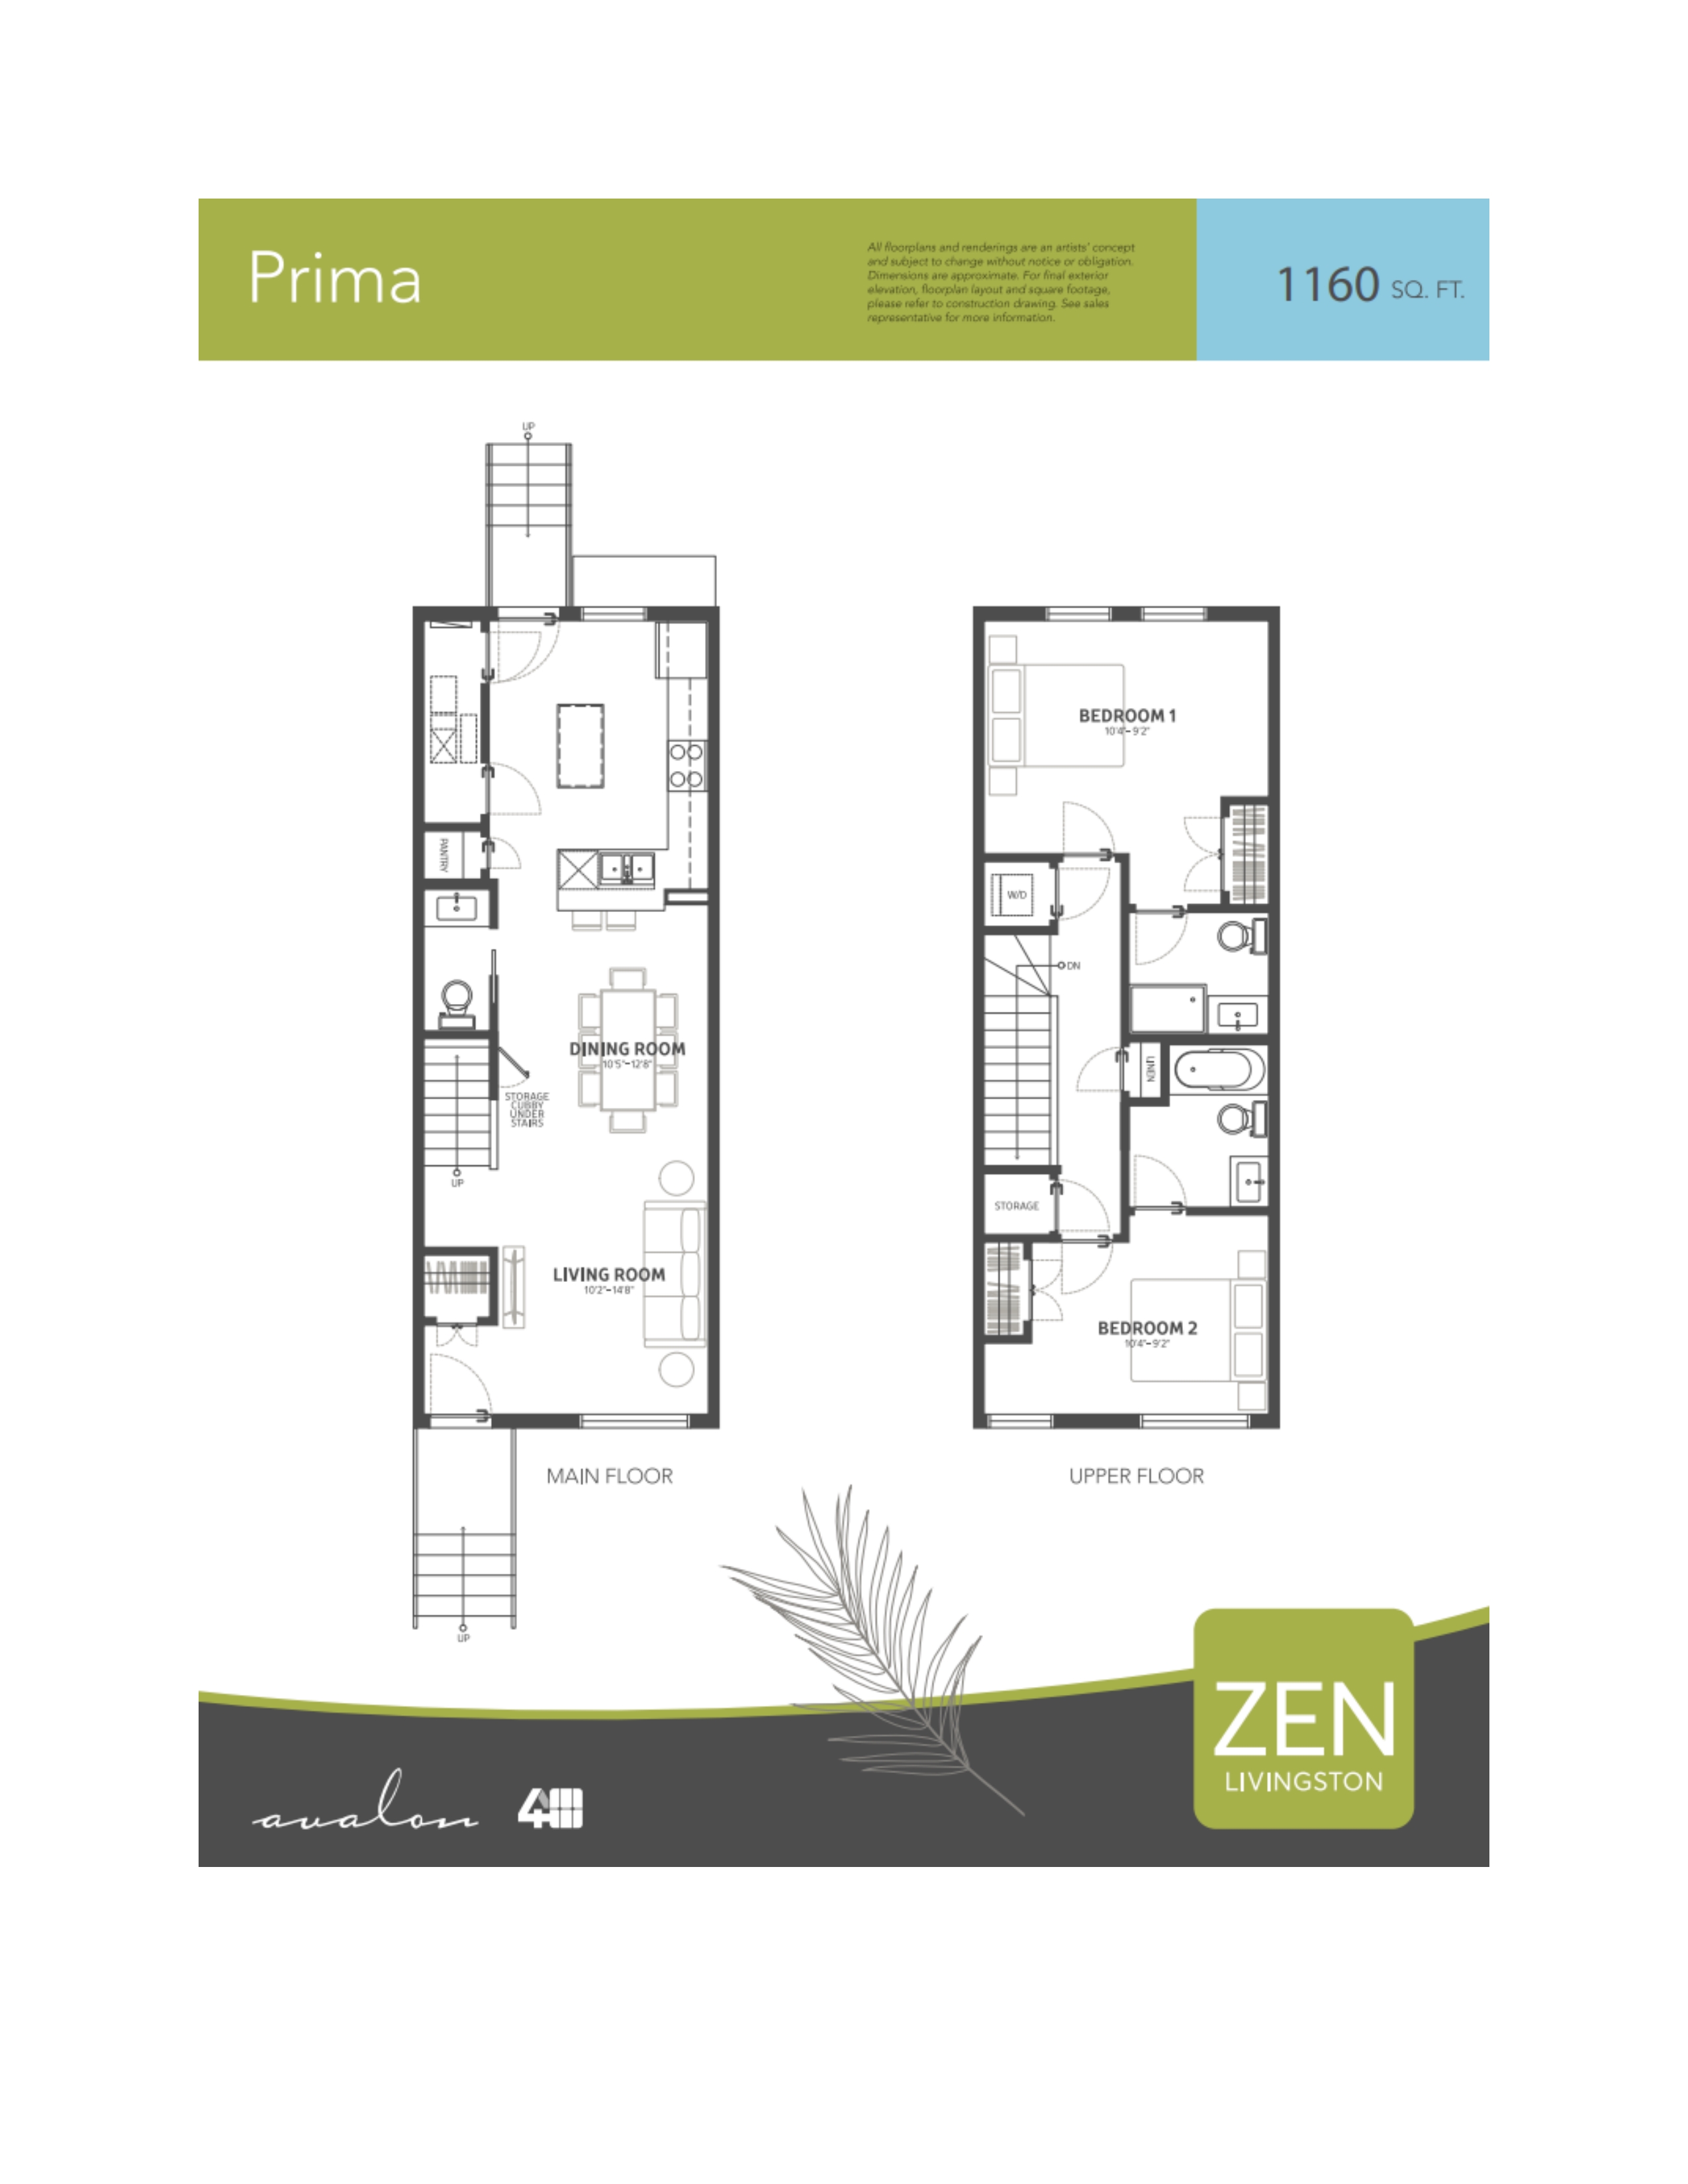  Floor Plan of ZEN Livingston with undefined beds